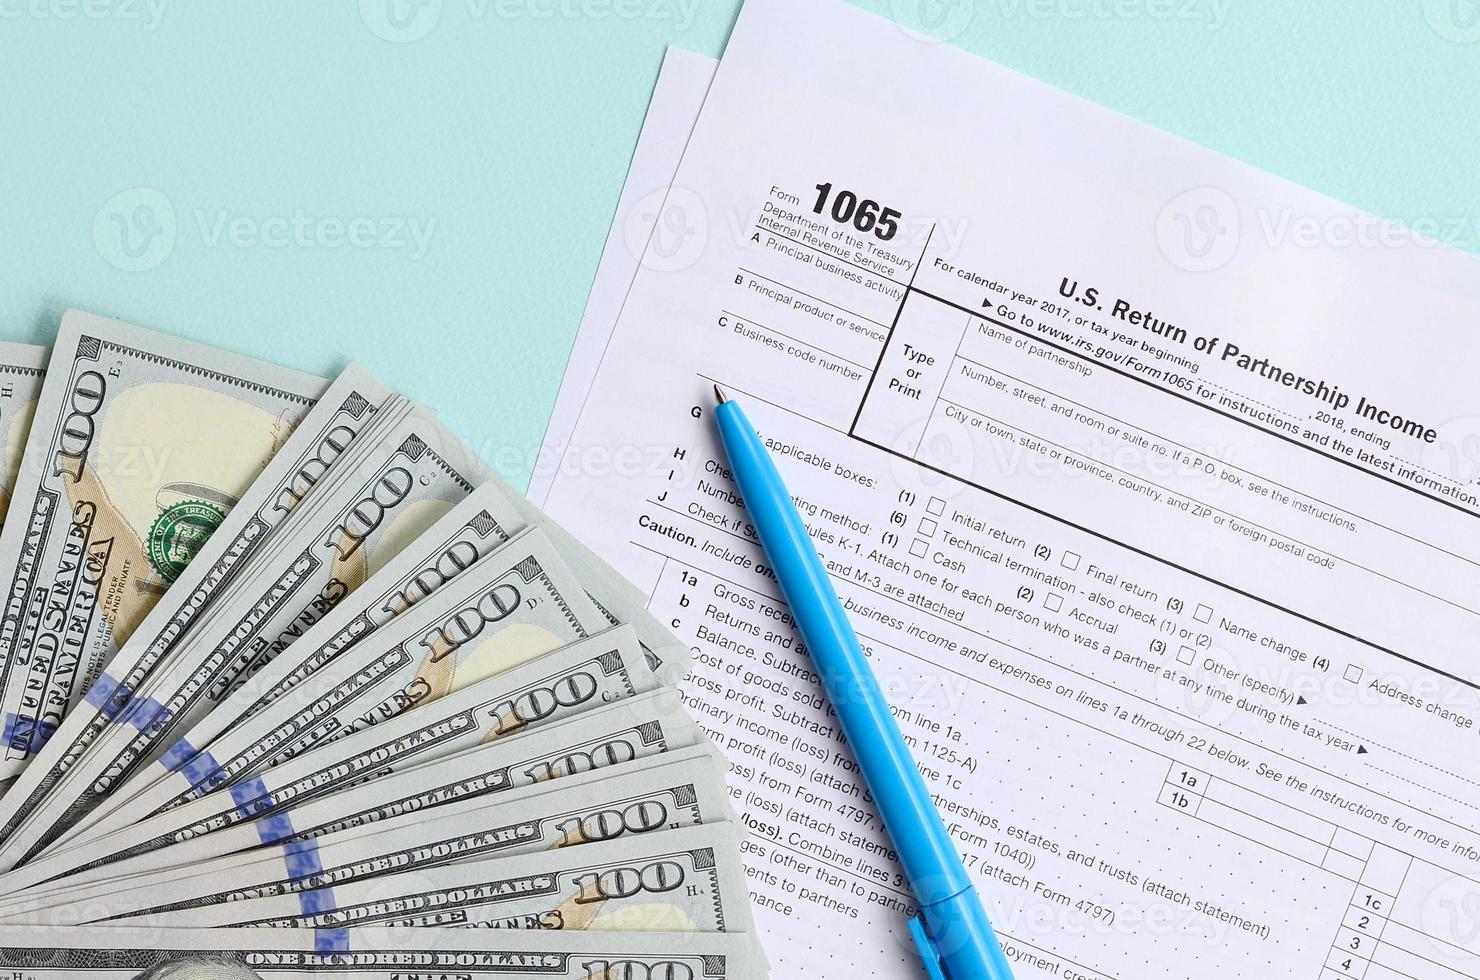 1065 Steuerformular liegt in der Nähe von Hundert-Dollar-Scheinen und blauem Stift auf hellblauem Hintergrund. uns für Elternschaftseinkommen zurückgeben foto